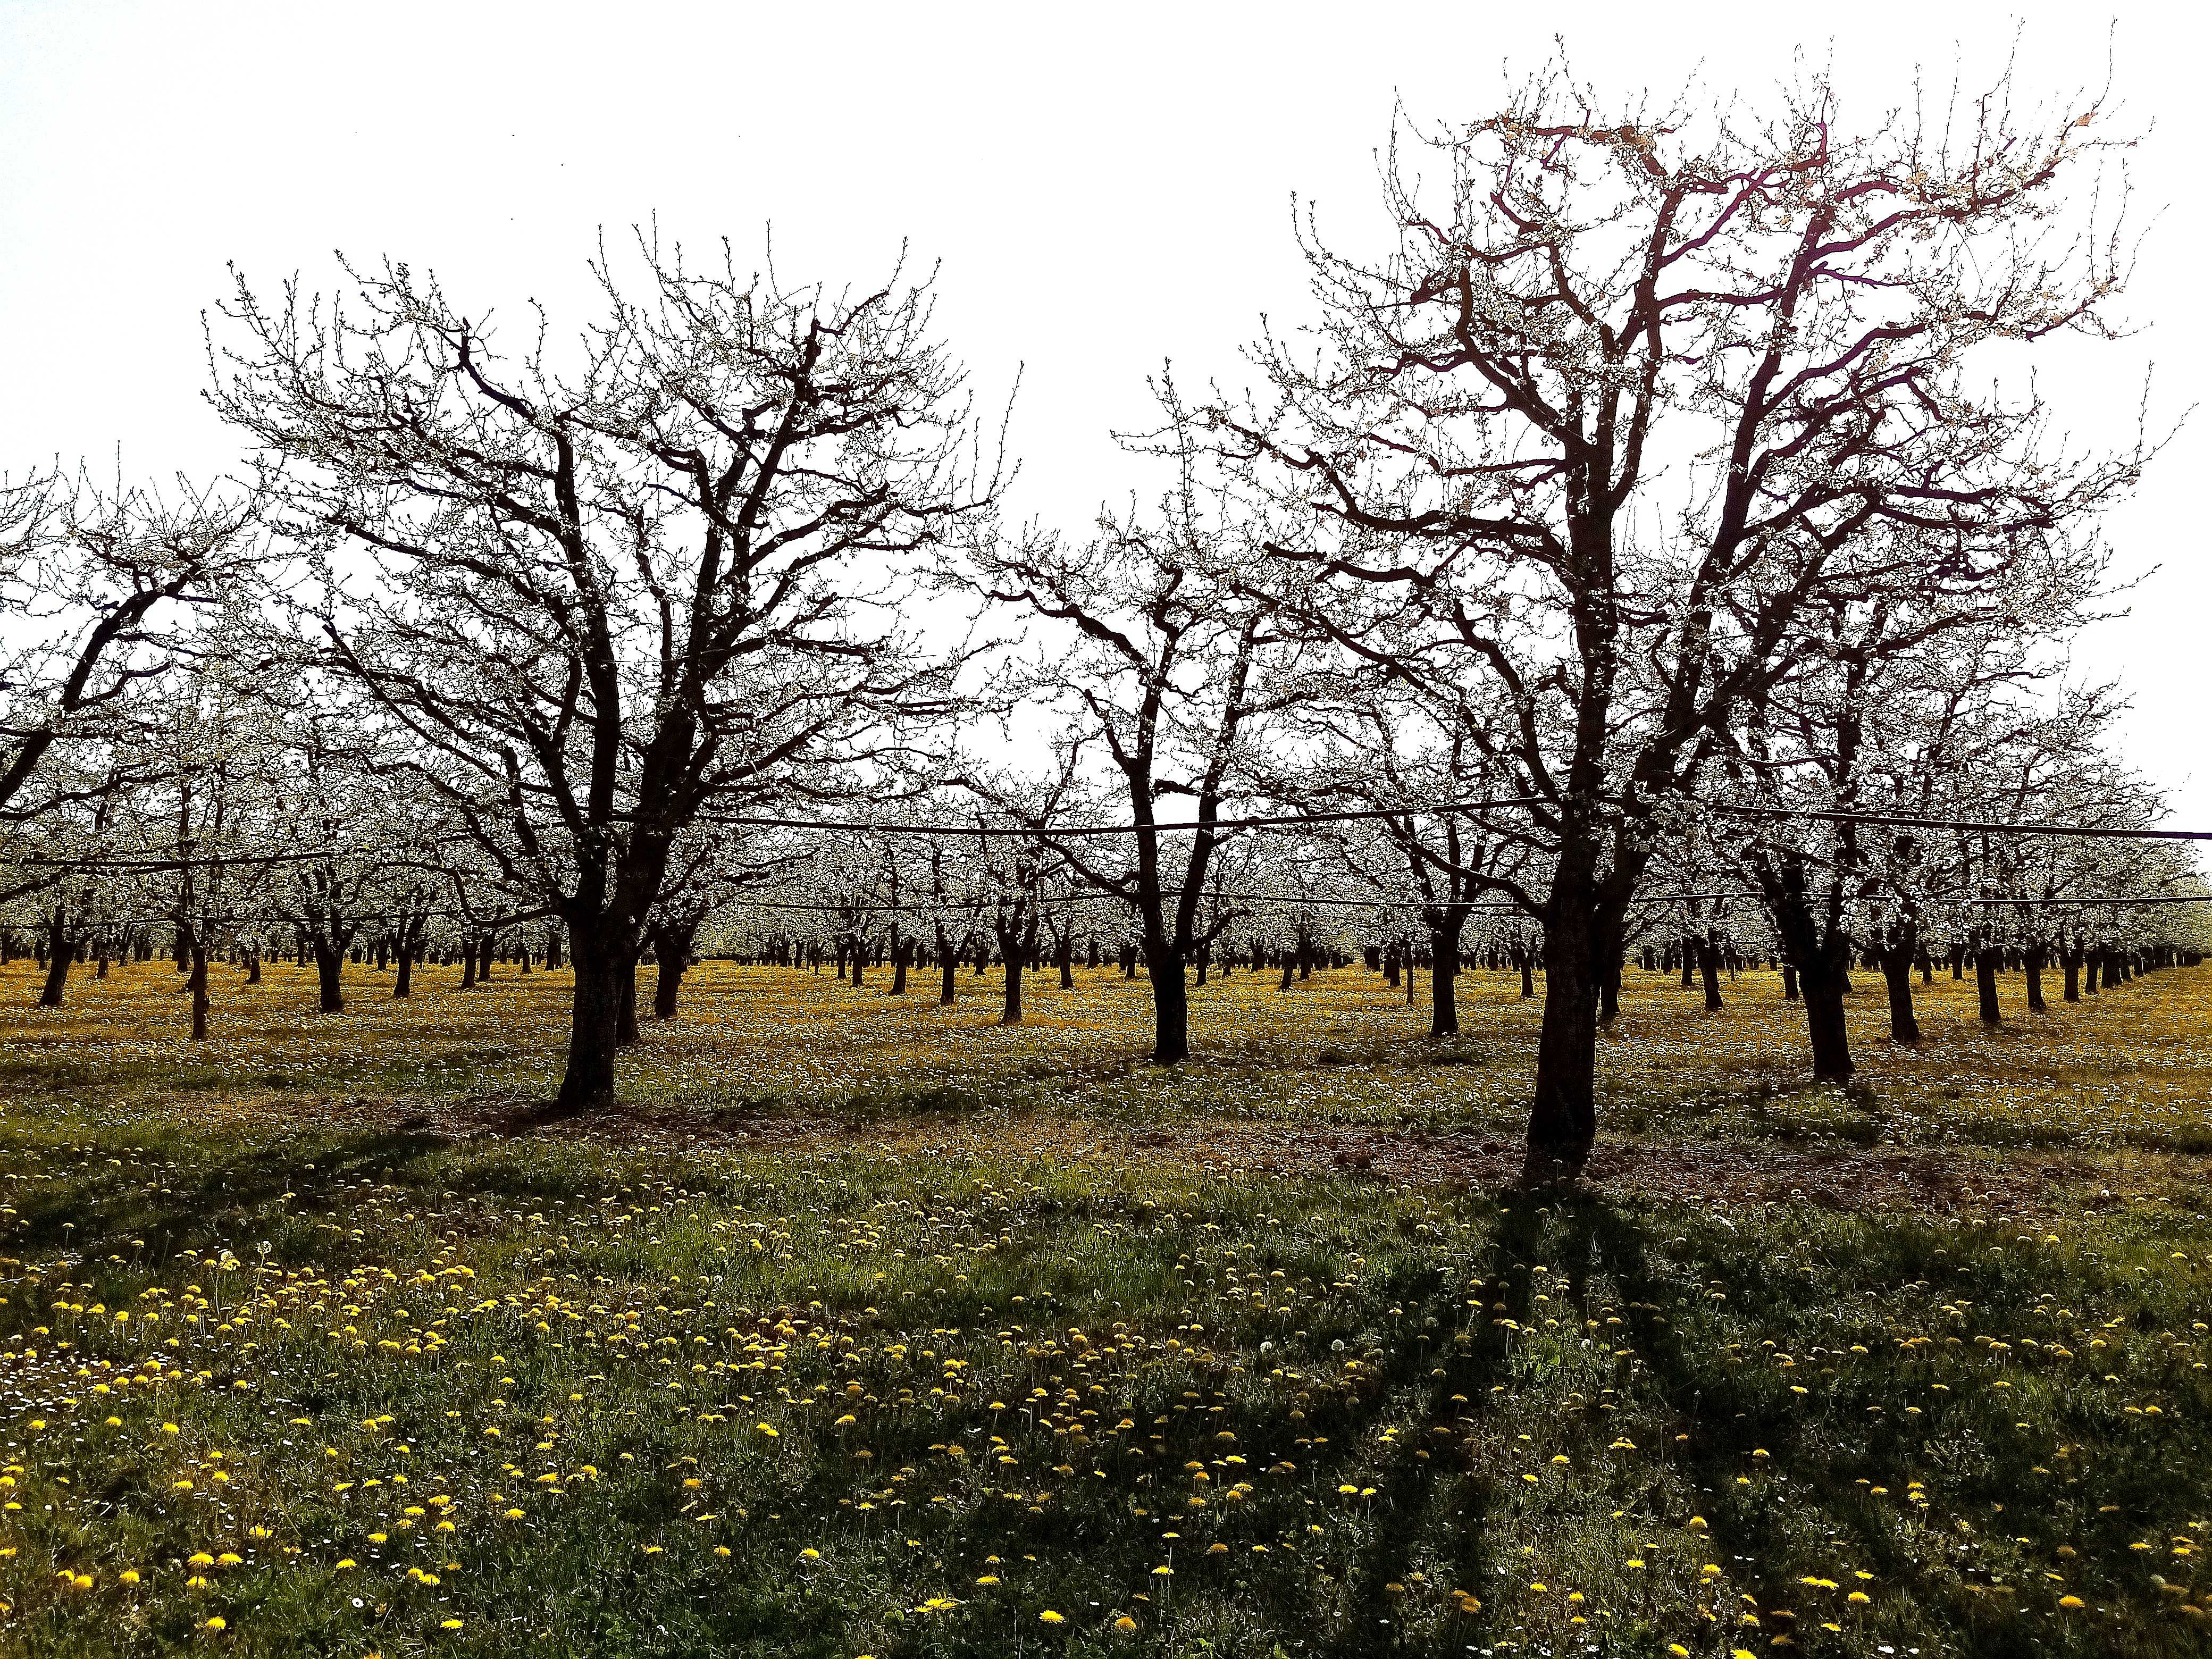 Sud Dordogne, les pruniers en fleurs... Magnifique paysage parfumé... Mais gare aux gelées nocturnes, car à ce stade les fleurs sont très sensibles au froid... 